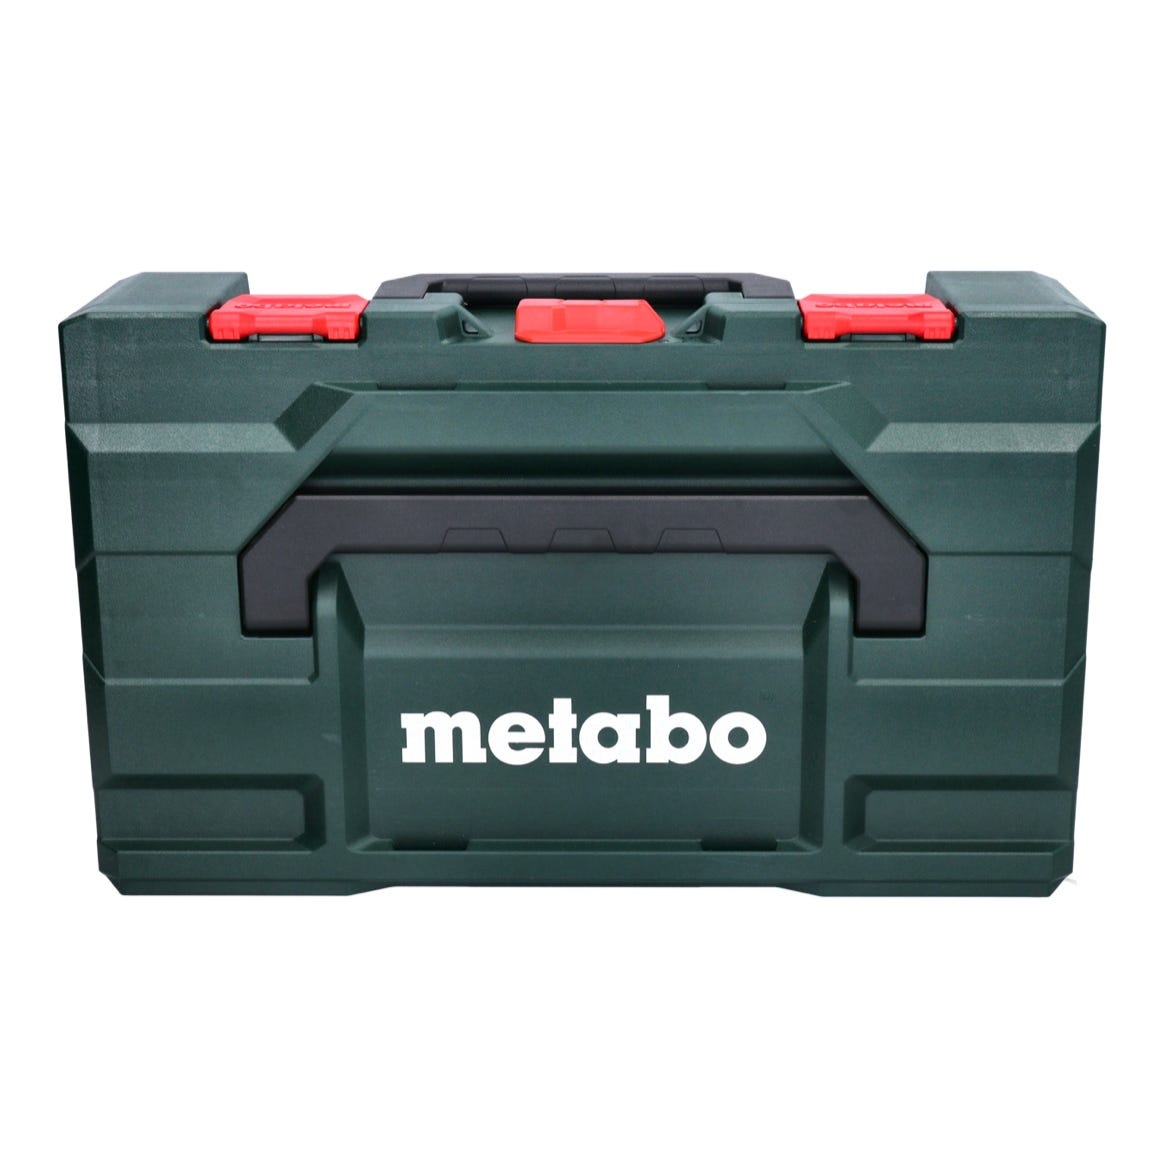 Metabo STA 18 LTX 100 Scie sauteuse sans fil 18V ( 601002840 ) + 1x Batterie 5,5Ah + Coffret de transport - sans chargeur 2